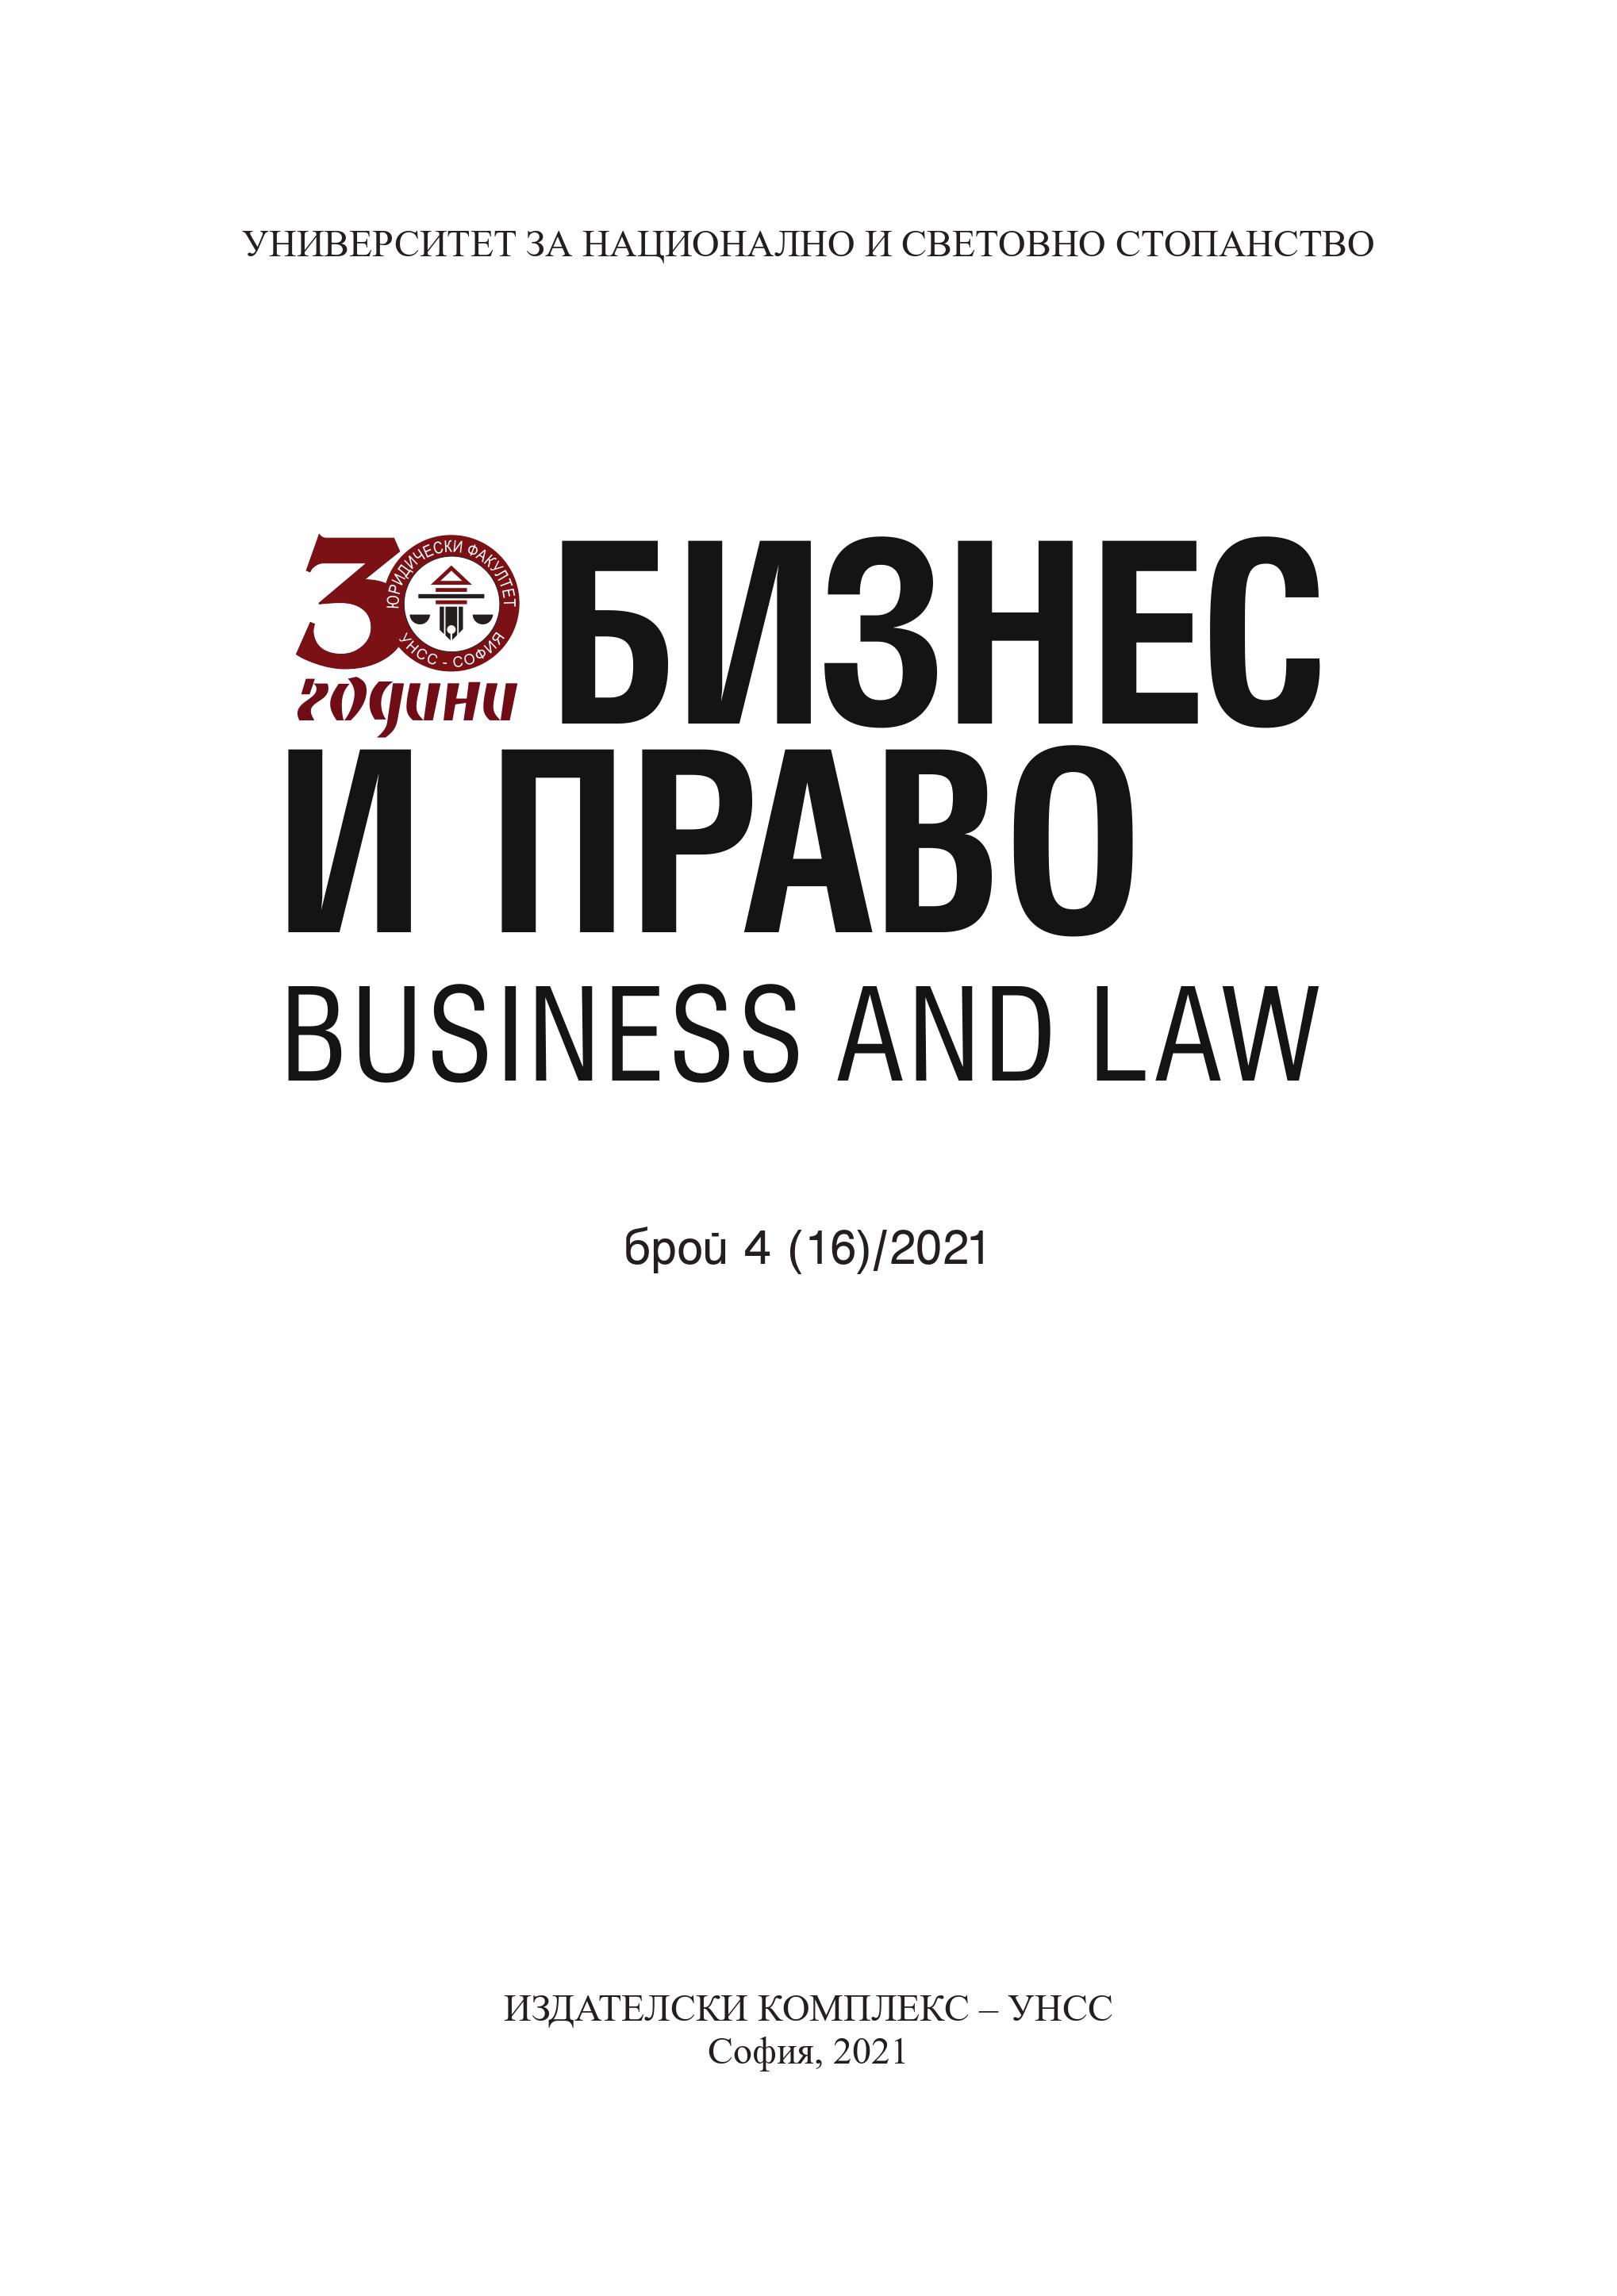 Развитие на института на отнемане на имущество в българското законодателство и приложението на принципа "Non bis in idem"